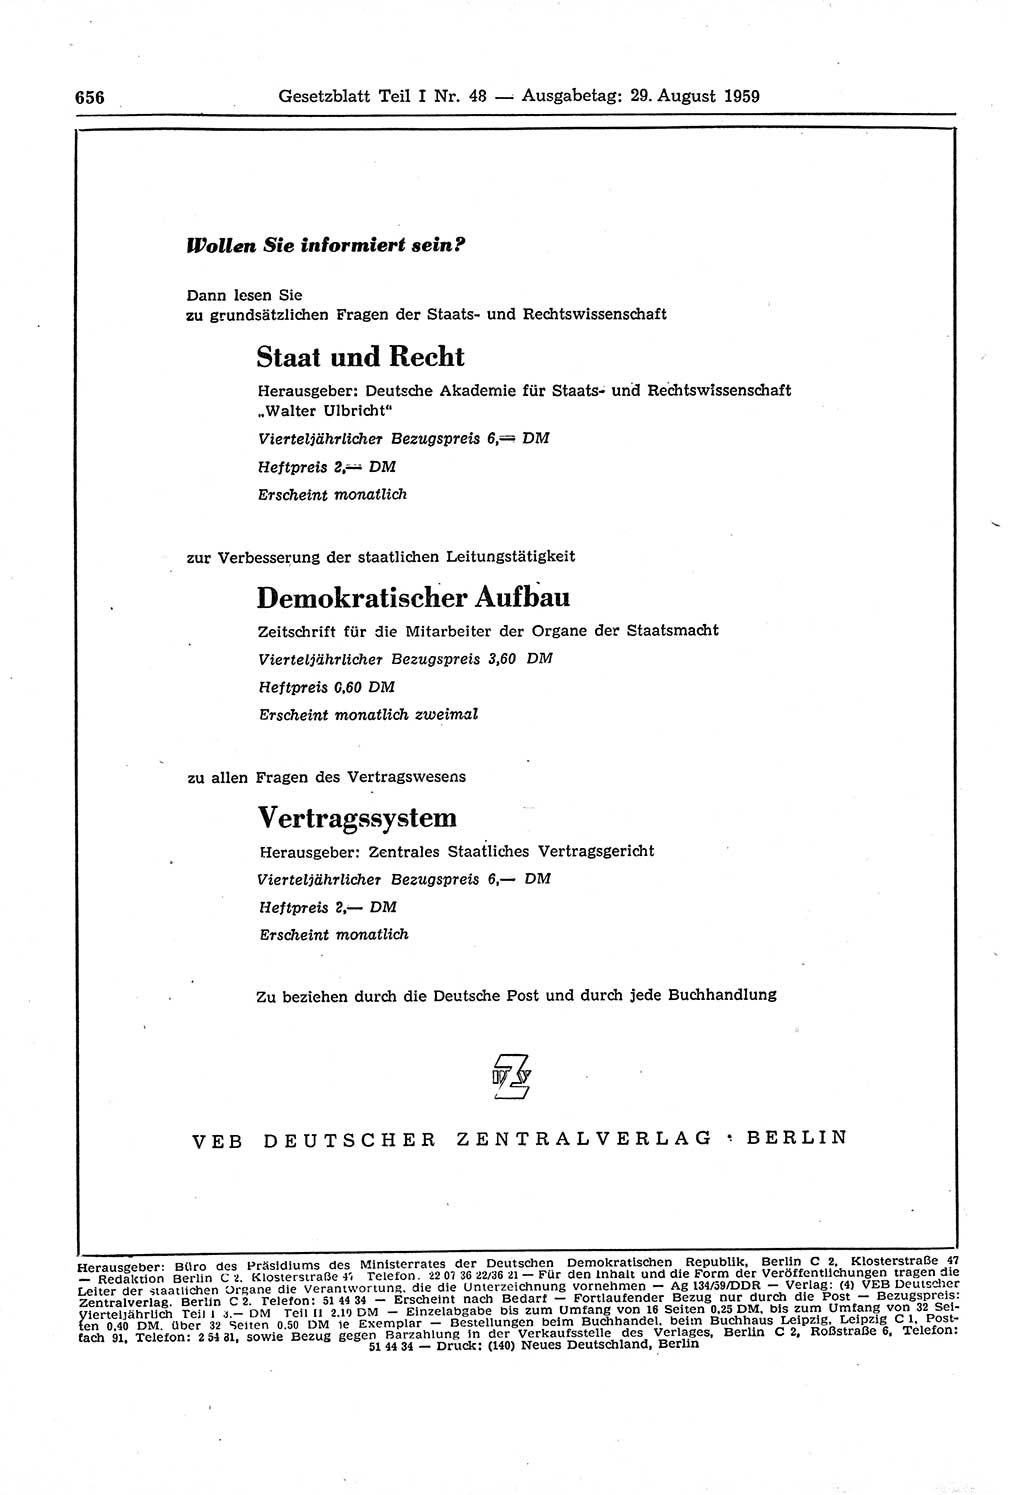 Gesetzblatt (GBl.) der Deutschen Demokratischen Republik (DDR) Teil Ⅰ 1959, Seite 656 (GBl. DDR Ⅰ 1959, S. 656)